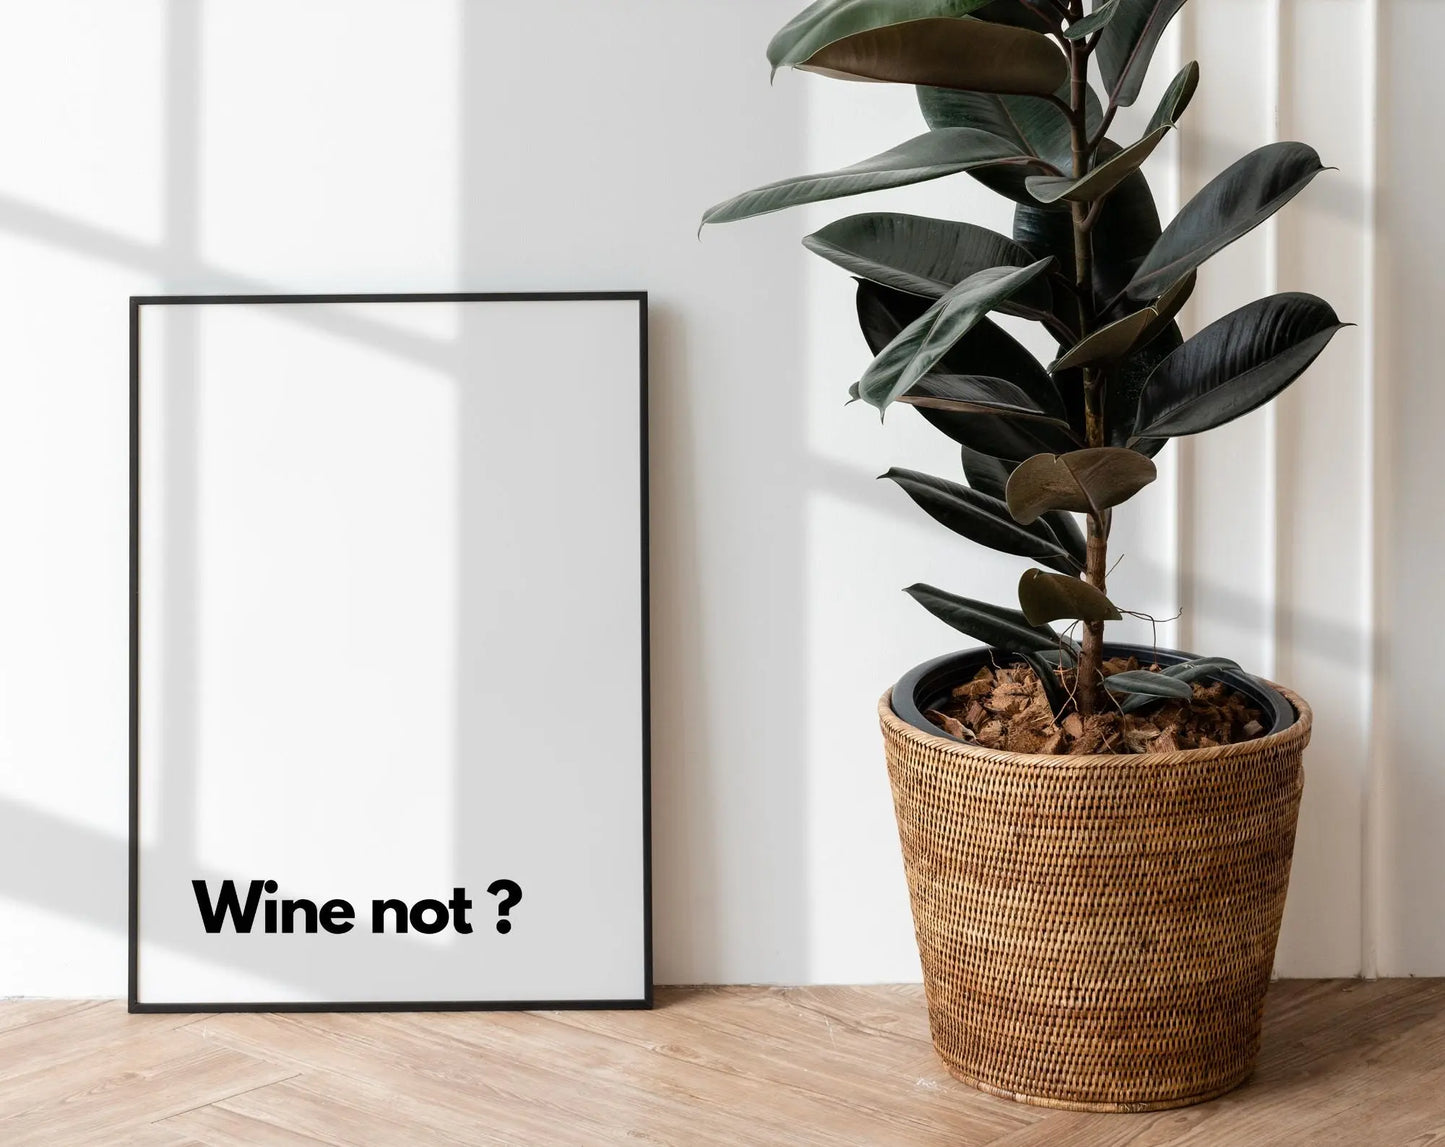 Wine not ? - Affiche citation humour FLTMfrance